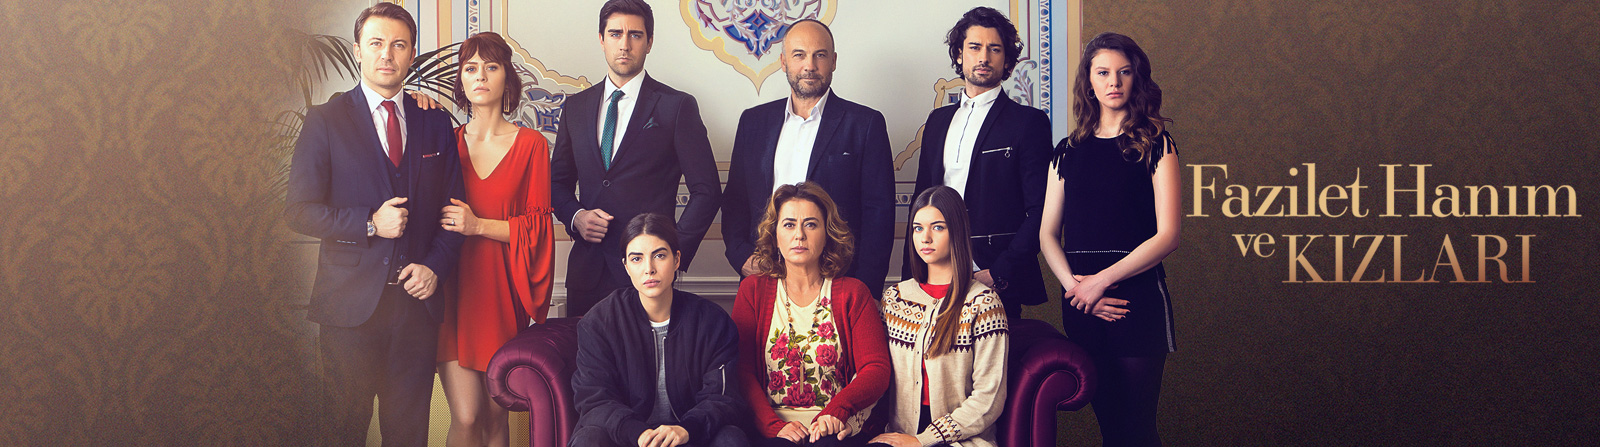 Serial turcesc Fazilet Hanim ve Kizlari subtitrat DespreSeriale.